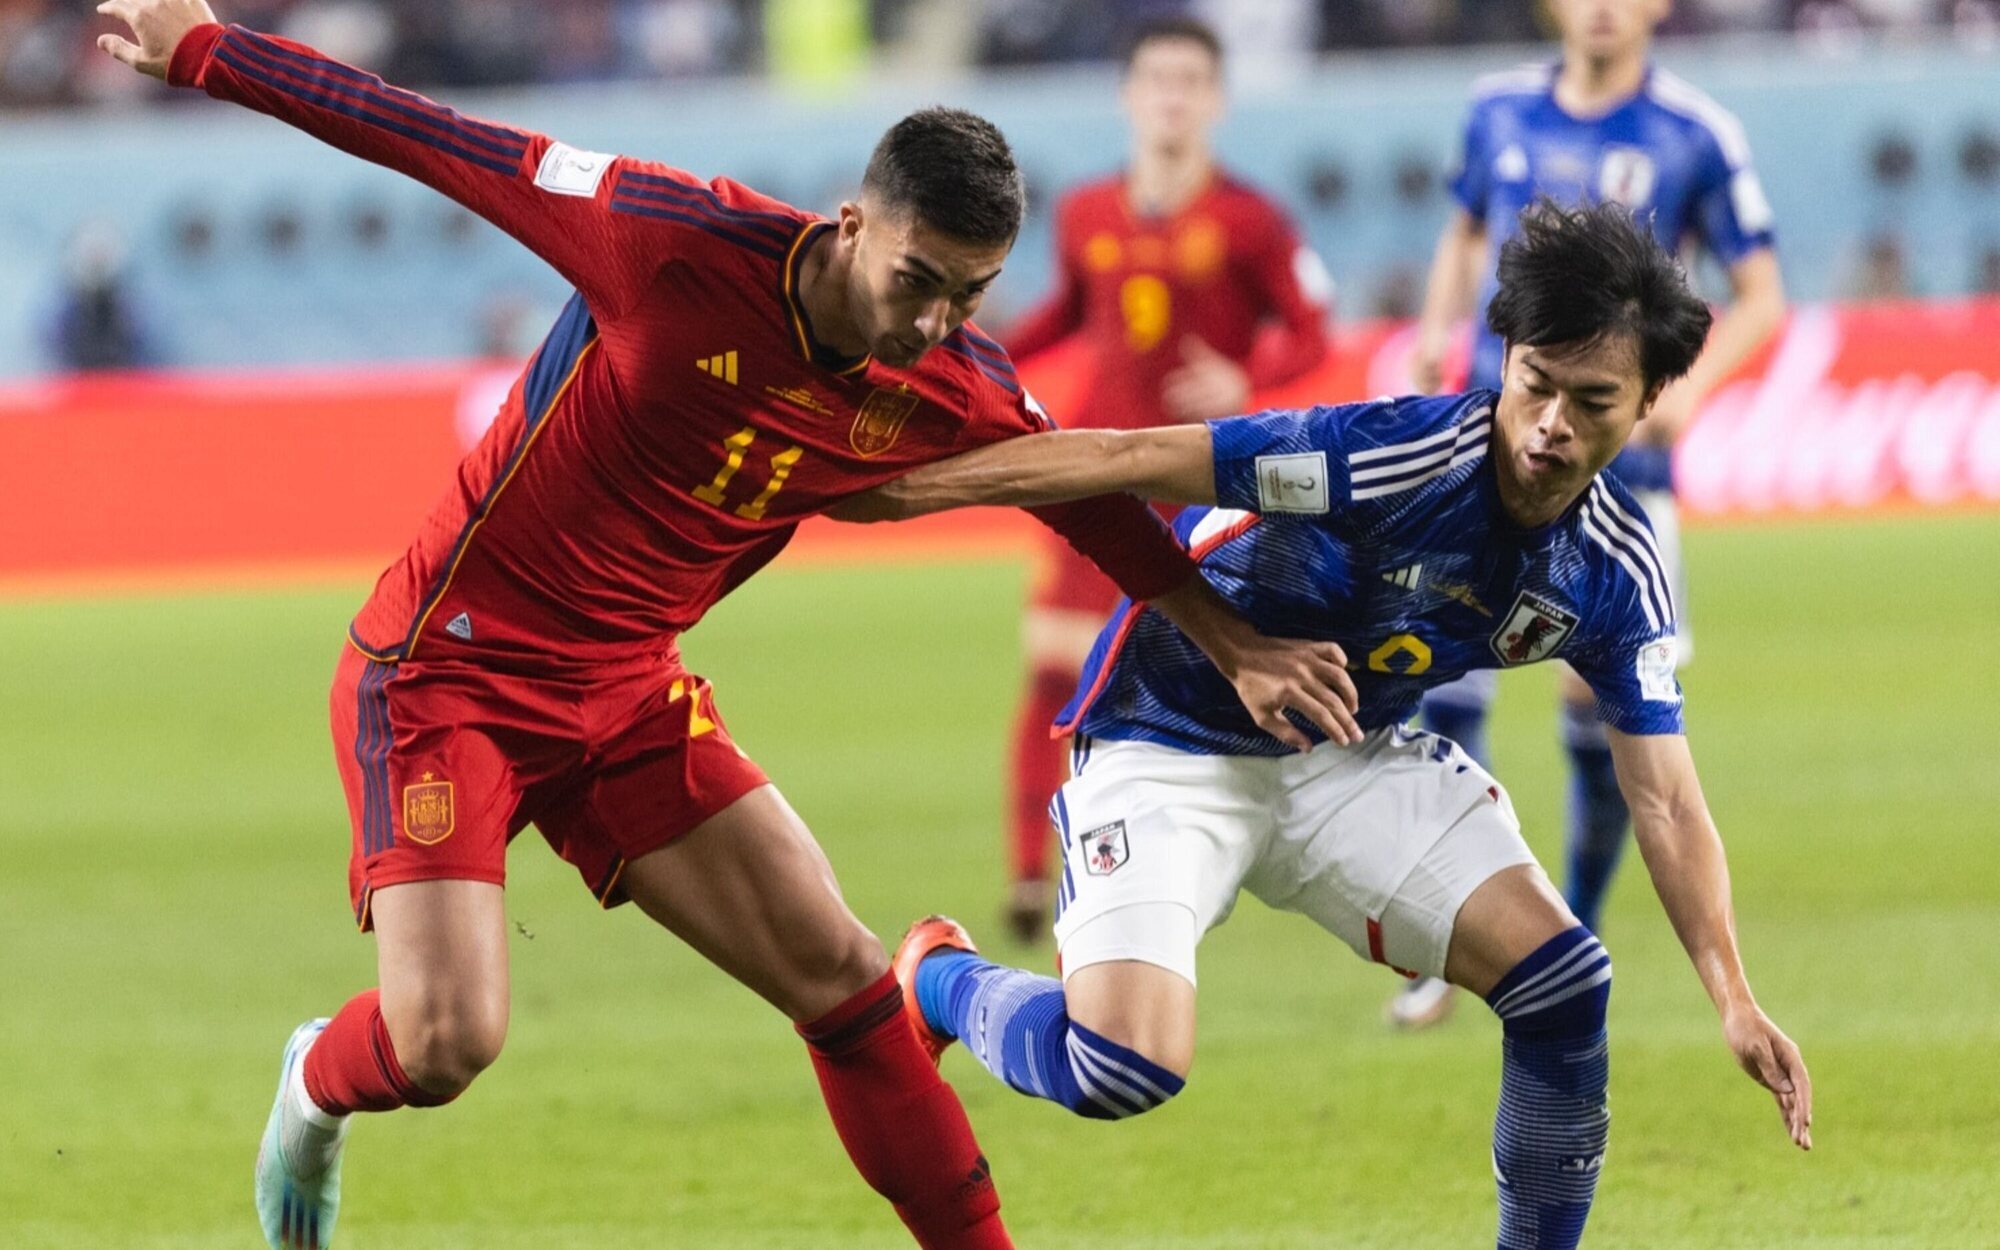 Un fallo de realización en el Mundial de Catar desata las críticas: "¿Será porque va perdiendo España?"